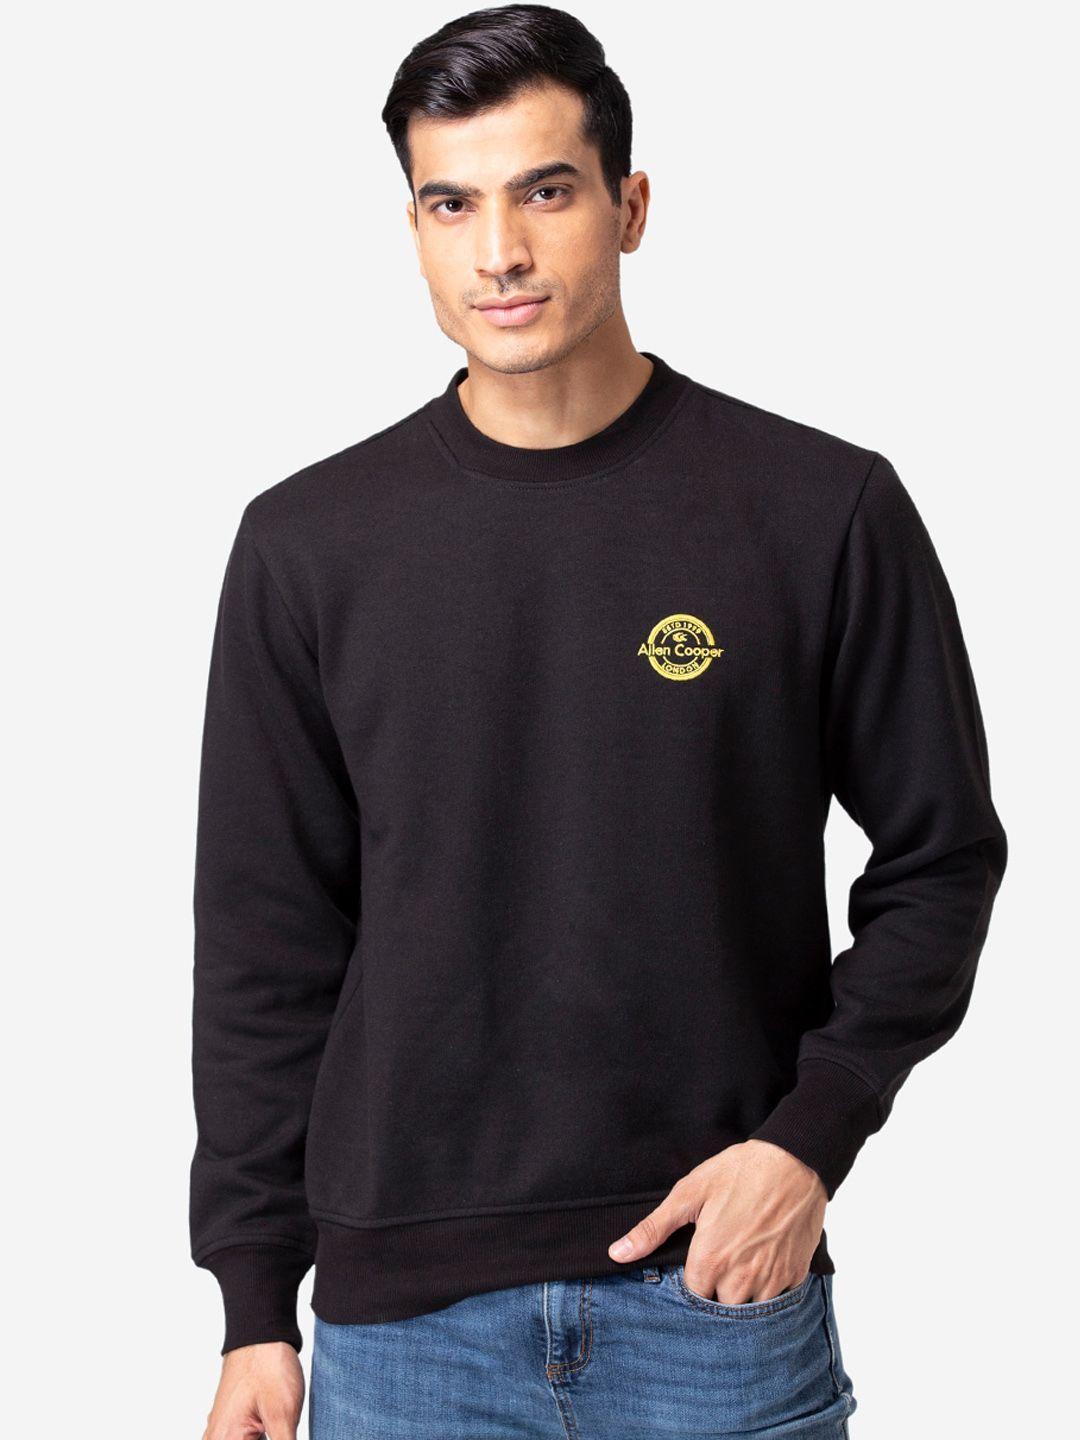 allen-cooper-men-black-sweatshirt